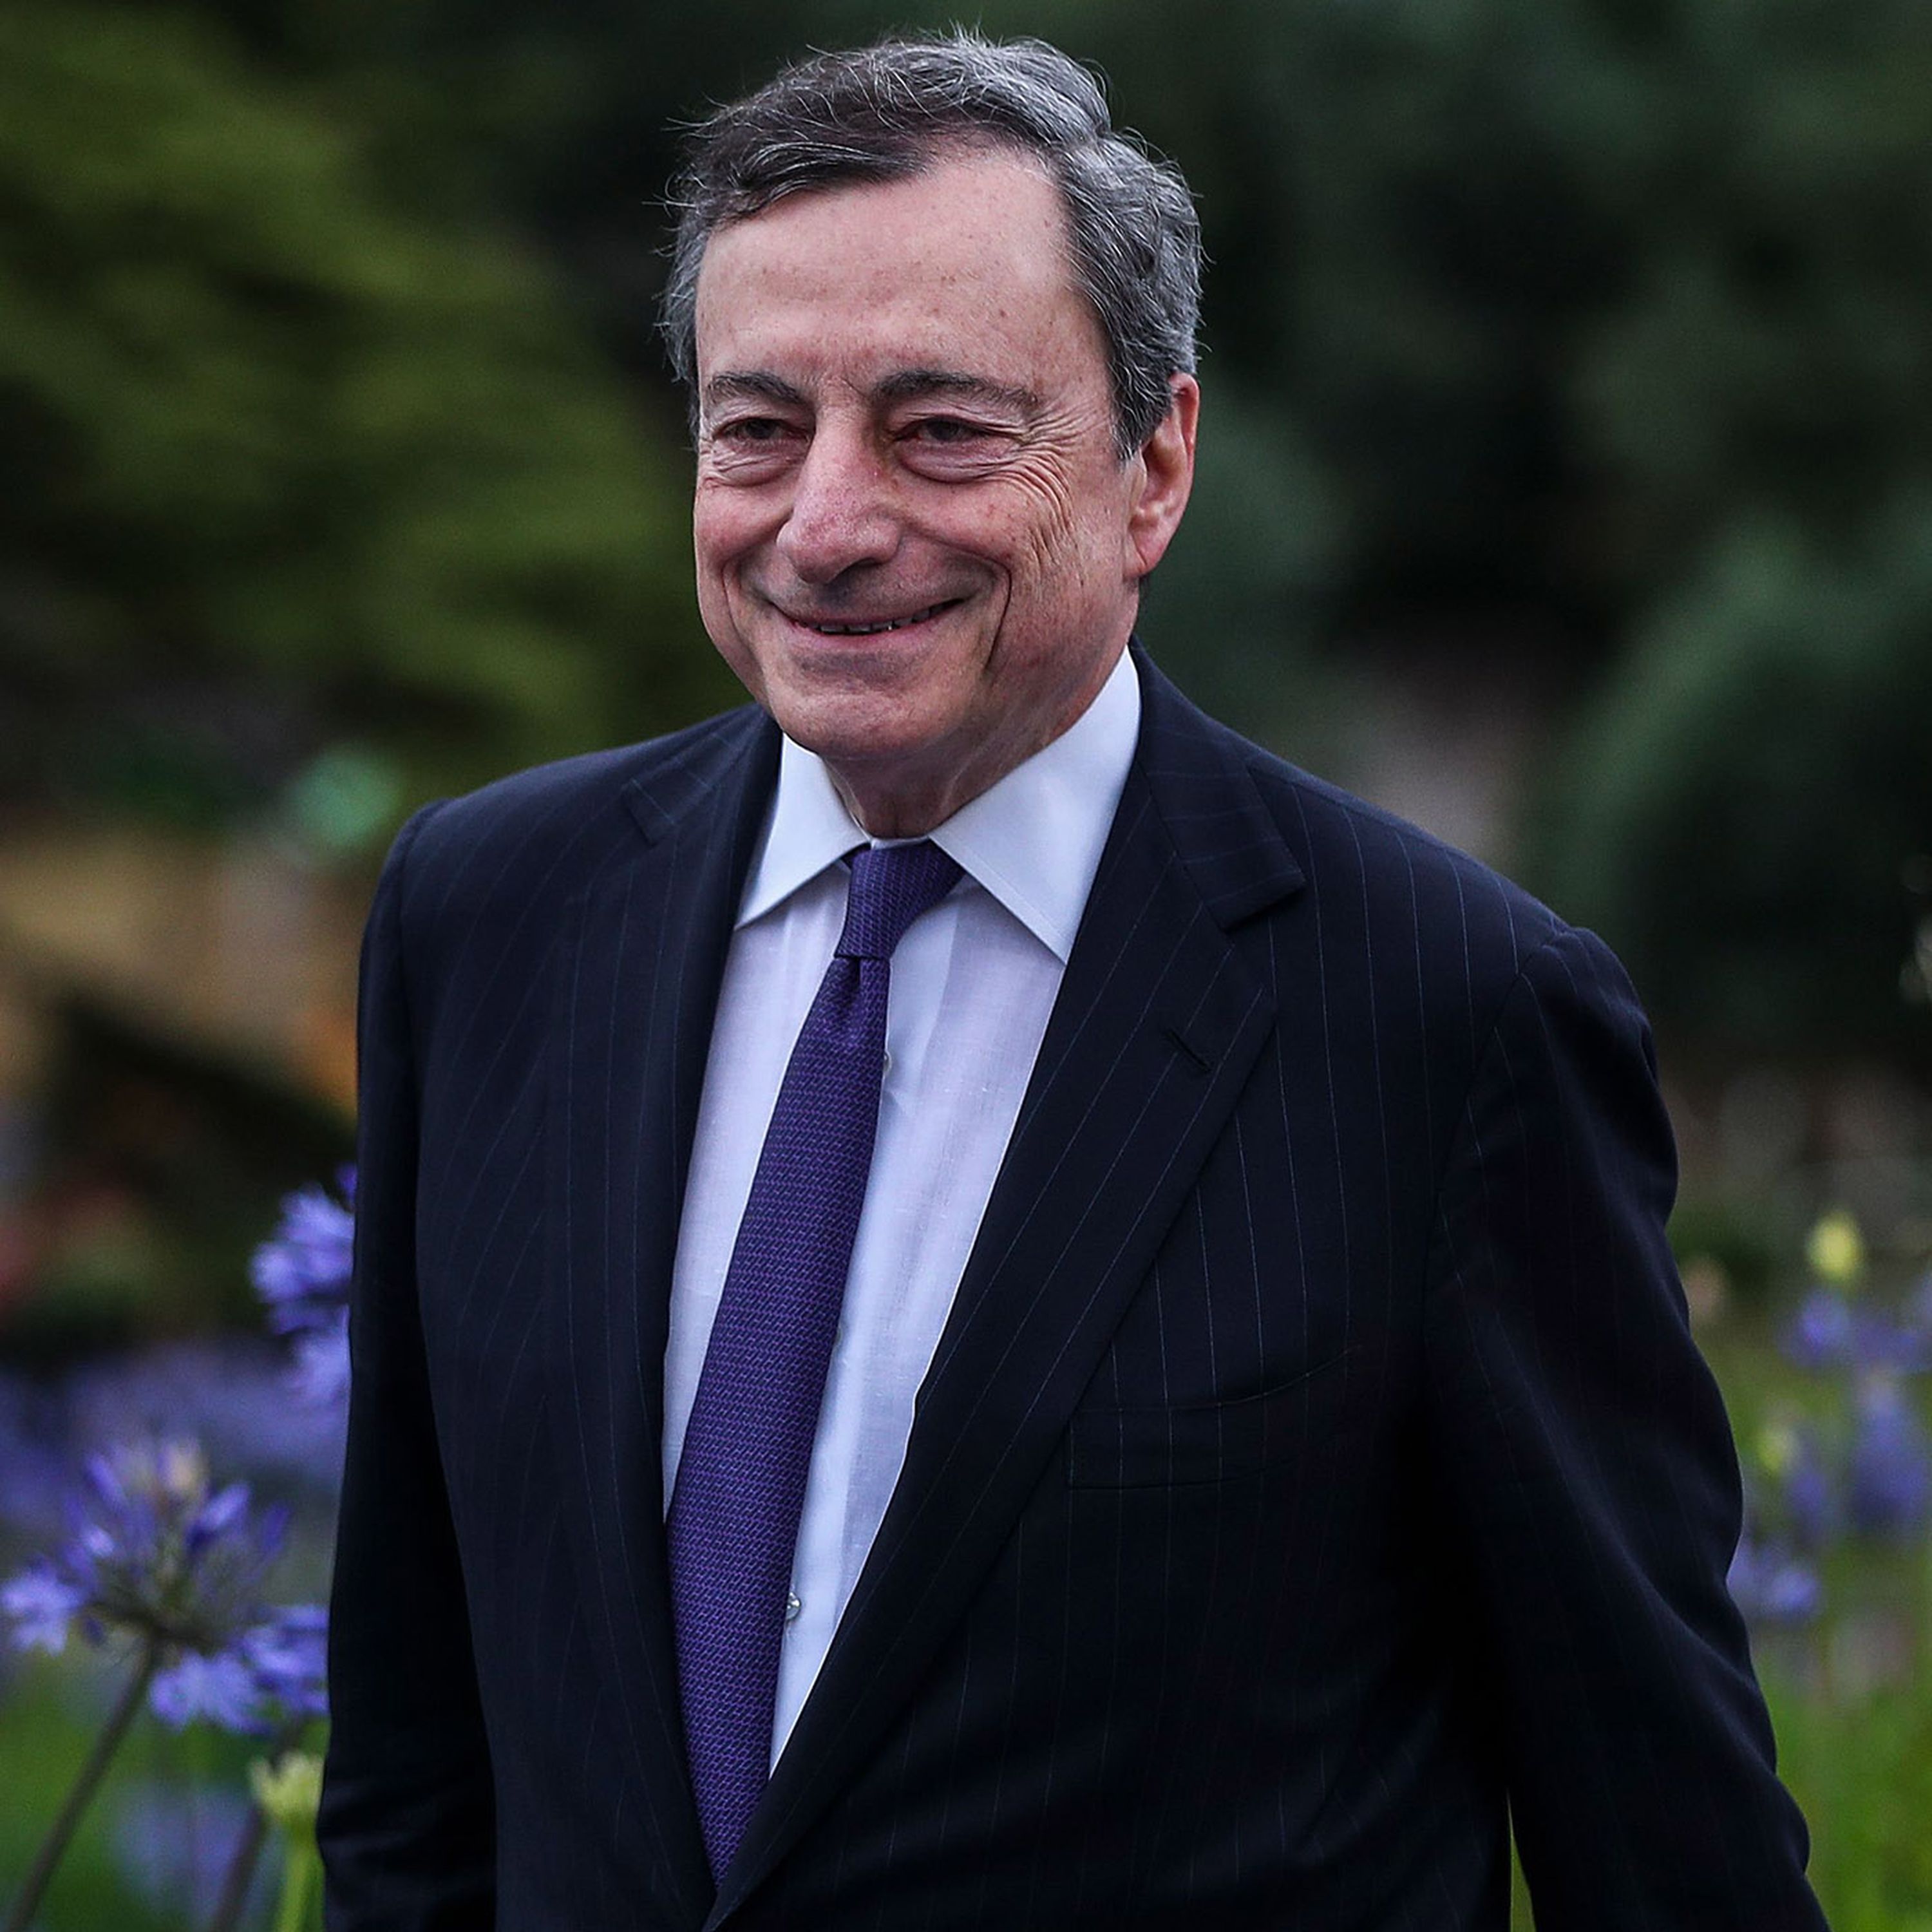 Trump attacks ECB chief over 'unfair' stimulus plan